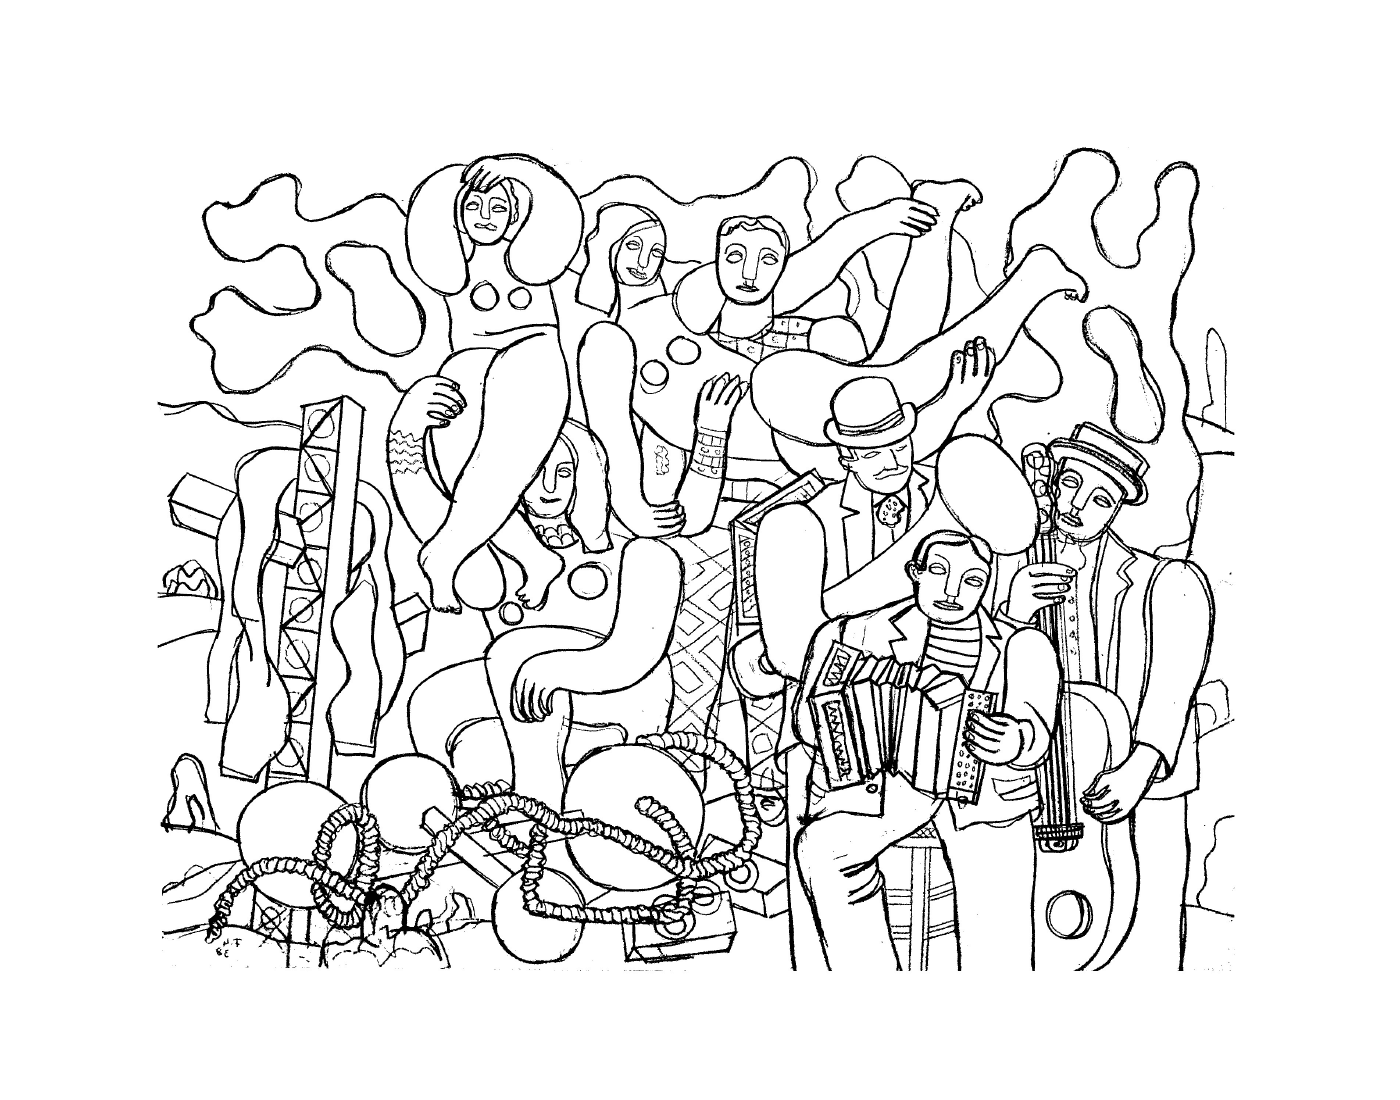  un gruppo di persone secondo Fernand Léger in acrobati e musicisti 